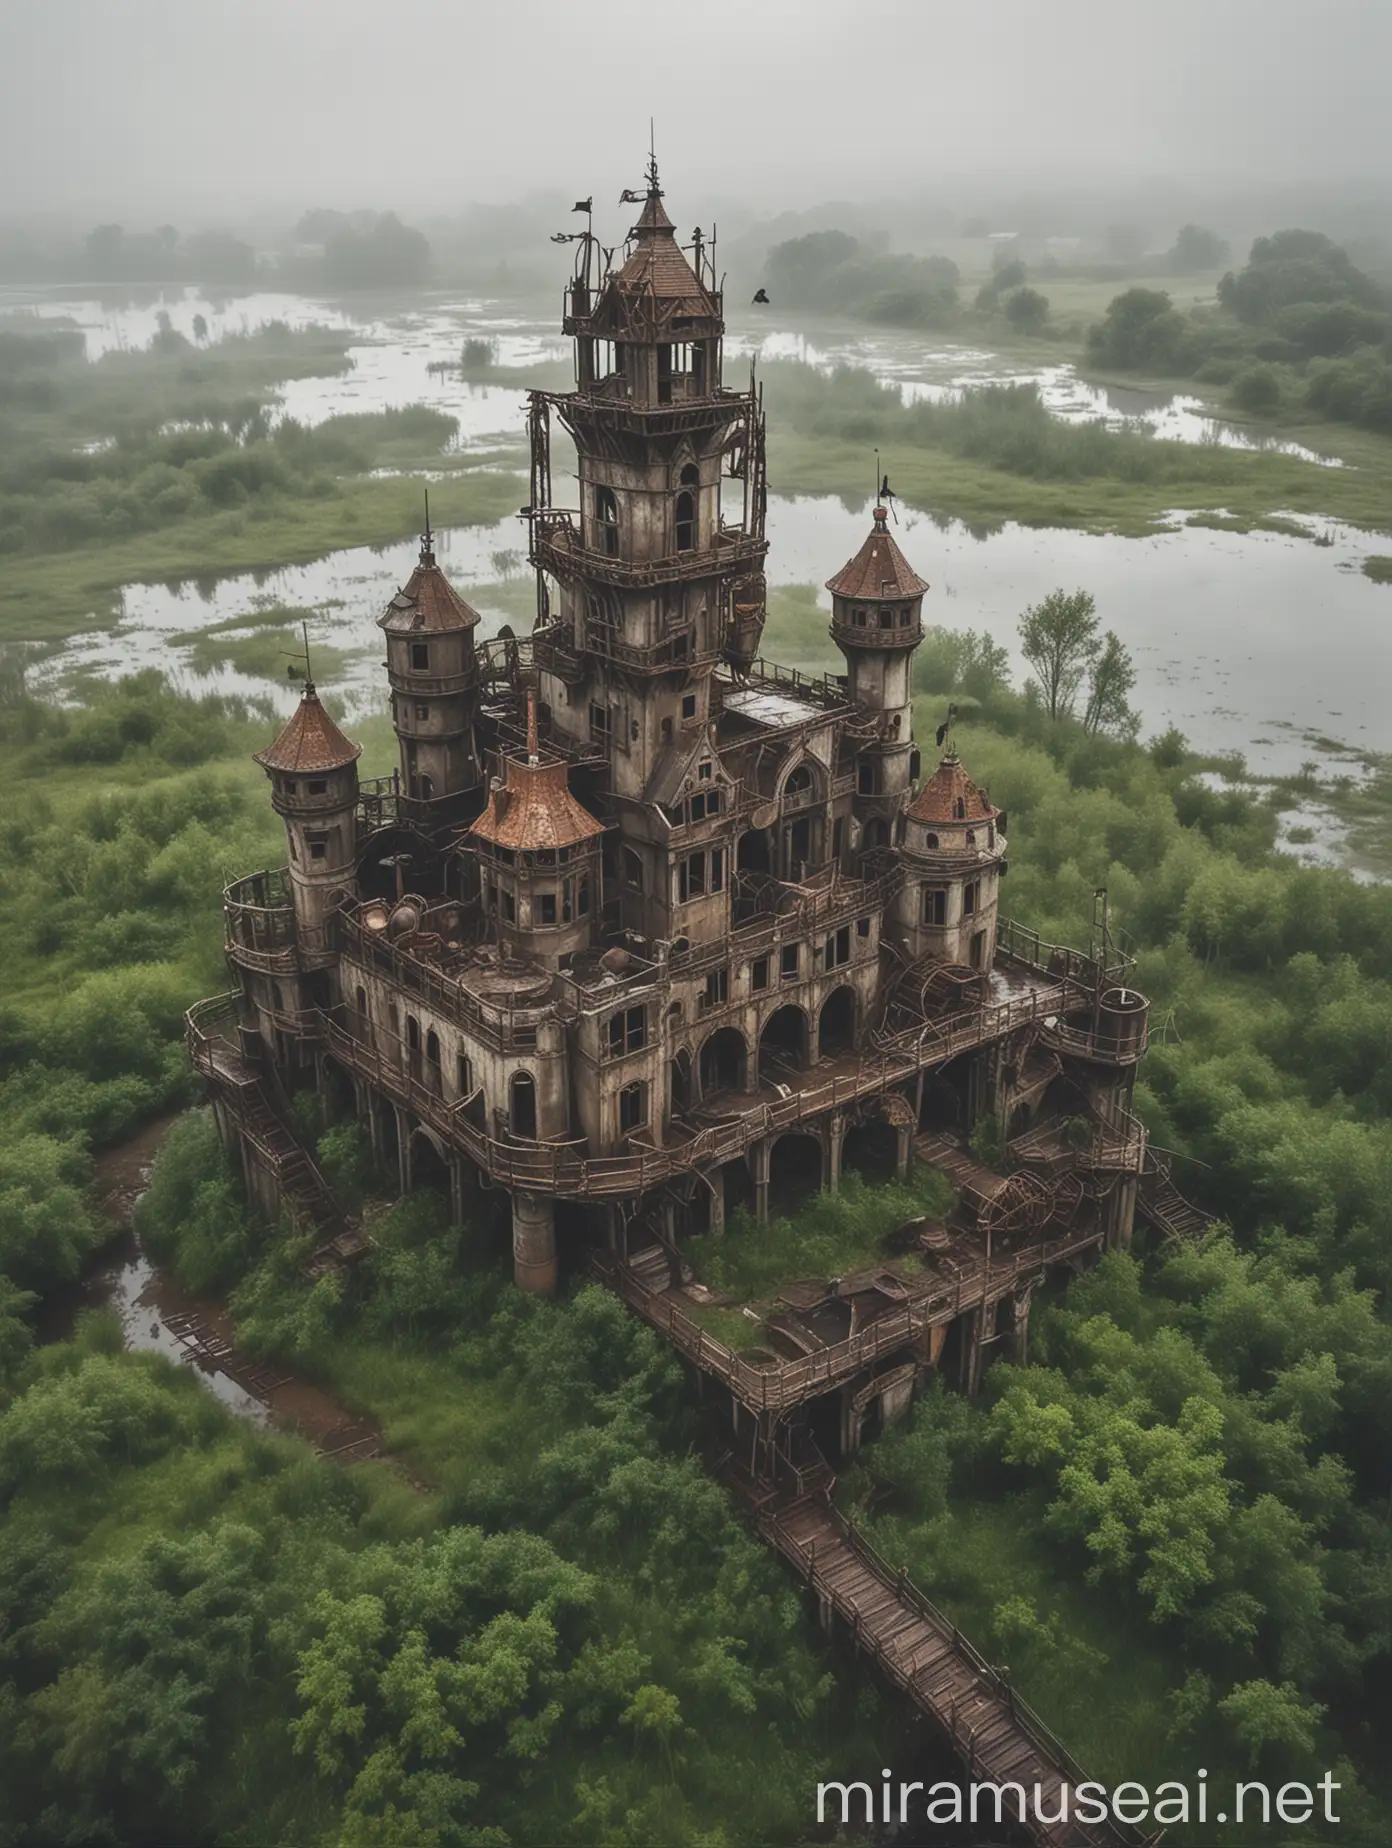 Eerie Steampunk Castle Ruins in Wetlands under Cloudy Skies